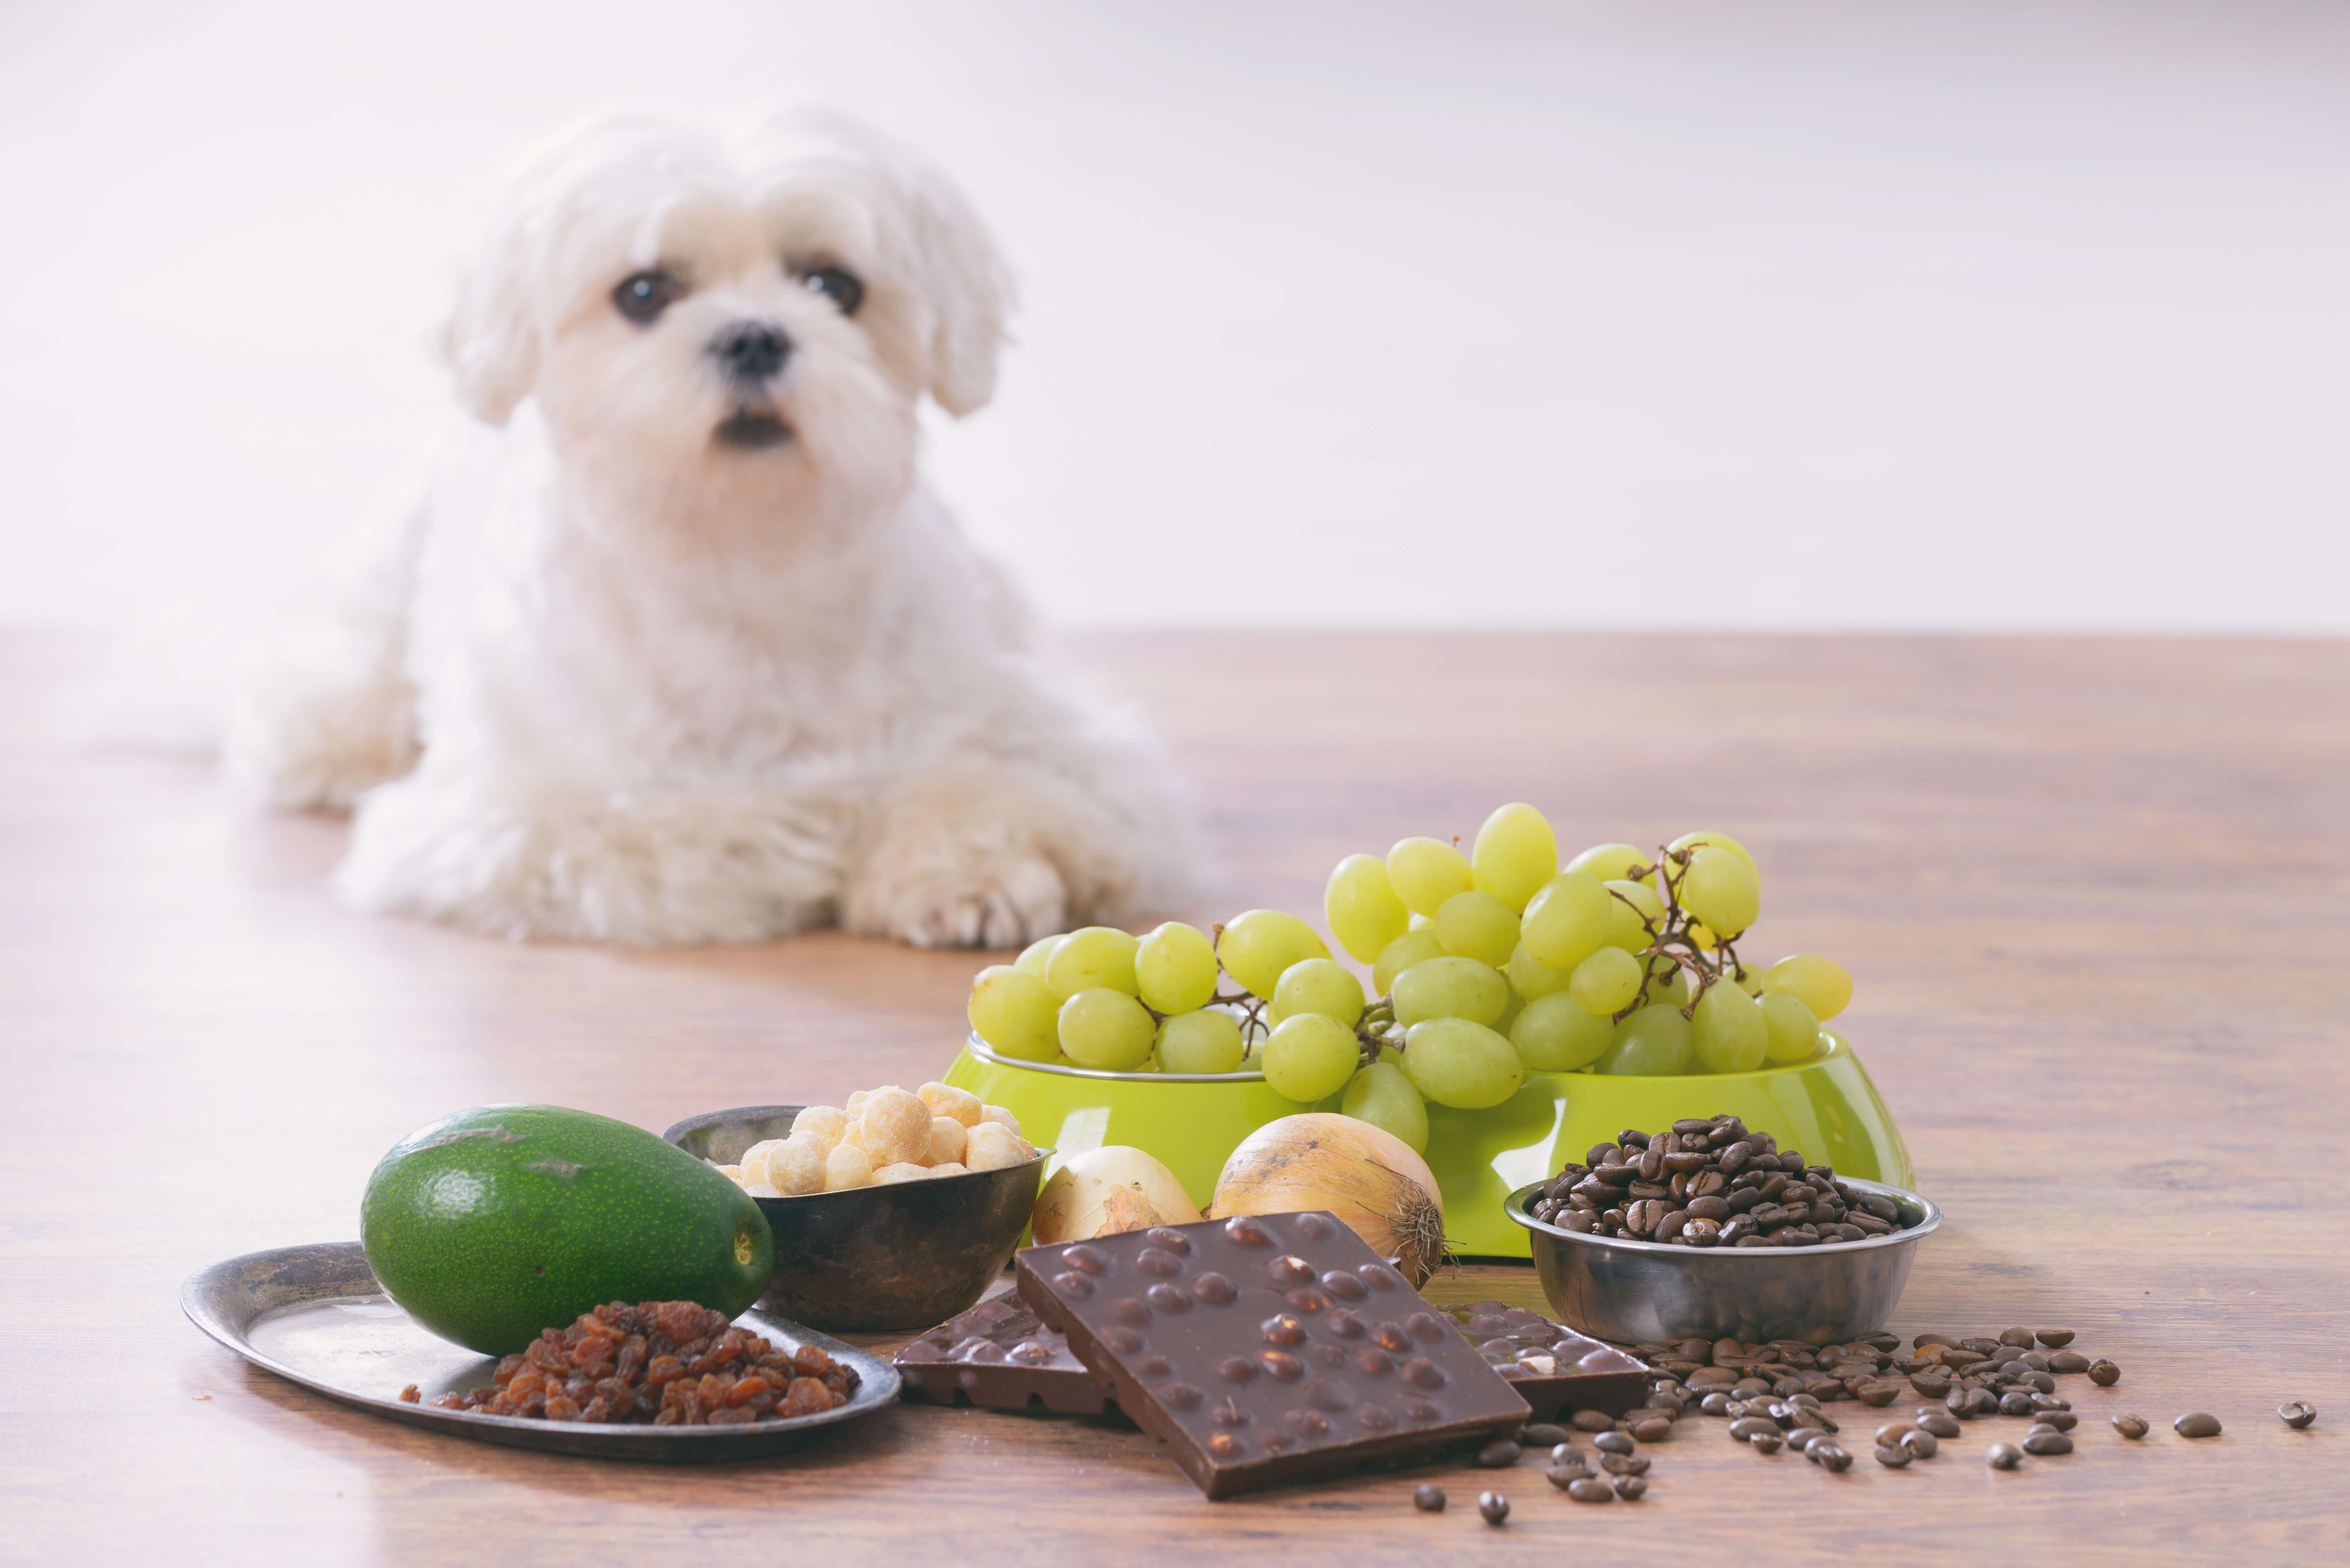 Czego nie może jeść pies - lista zakazanych produktów dla psa